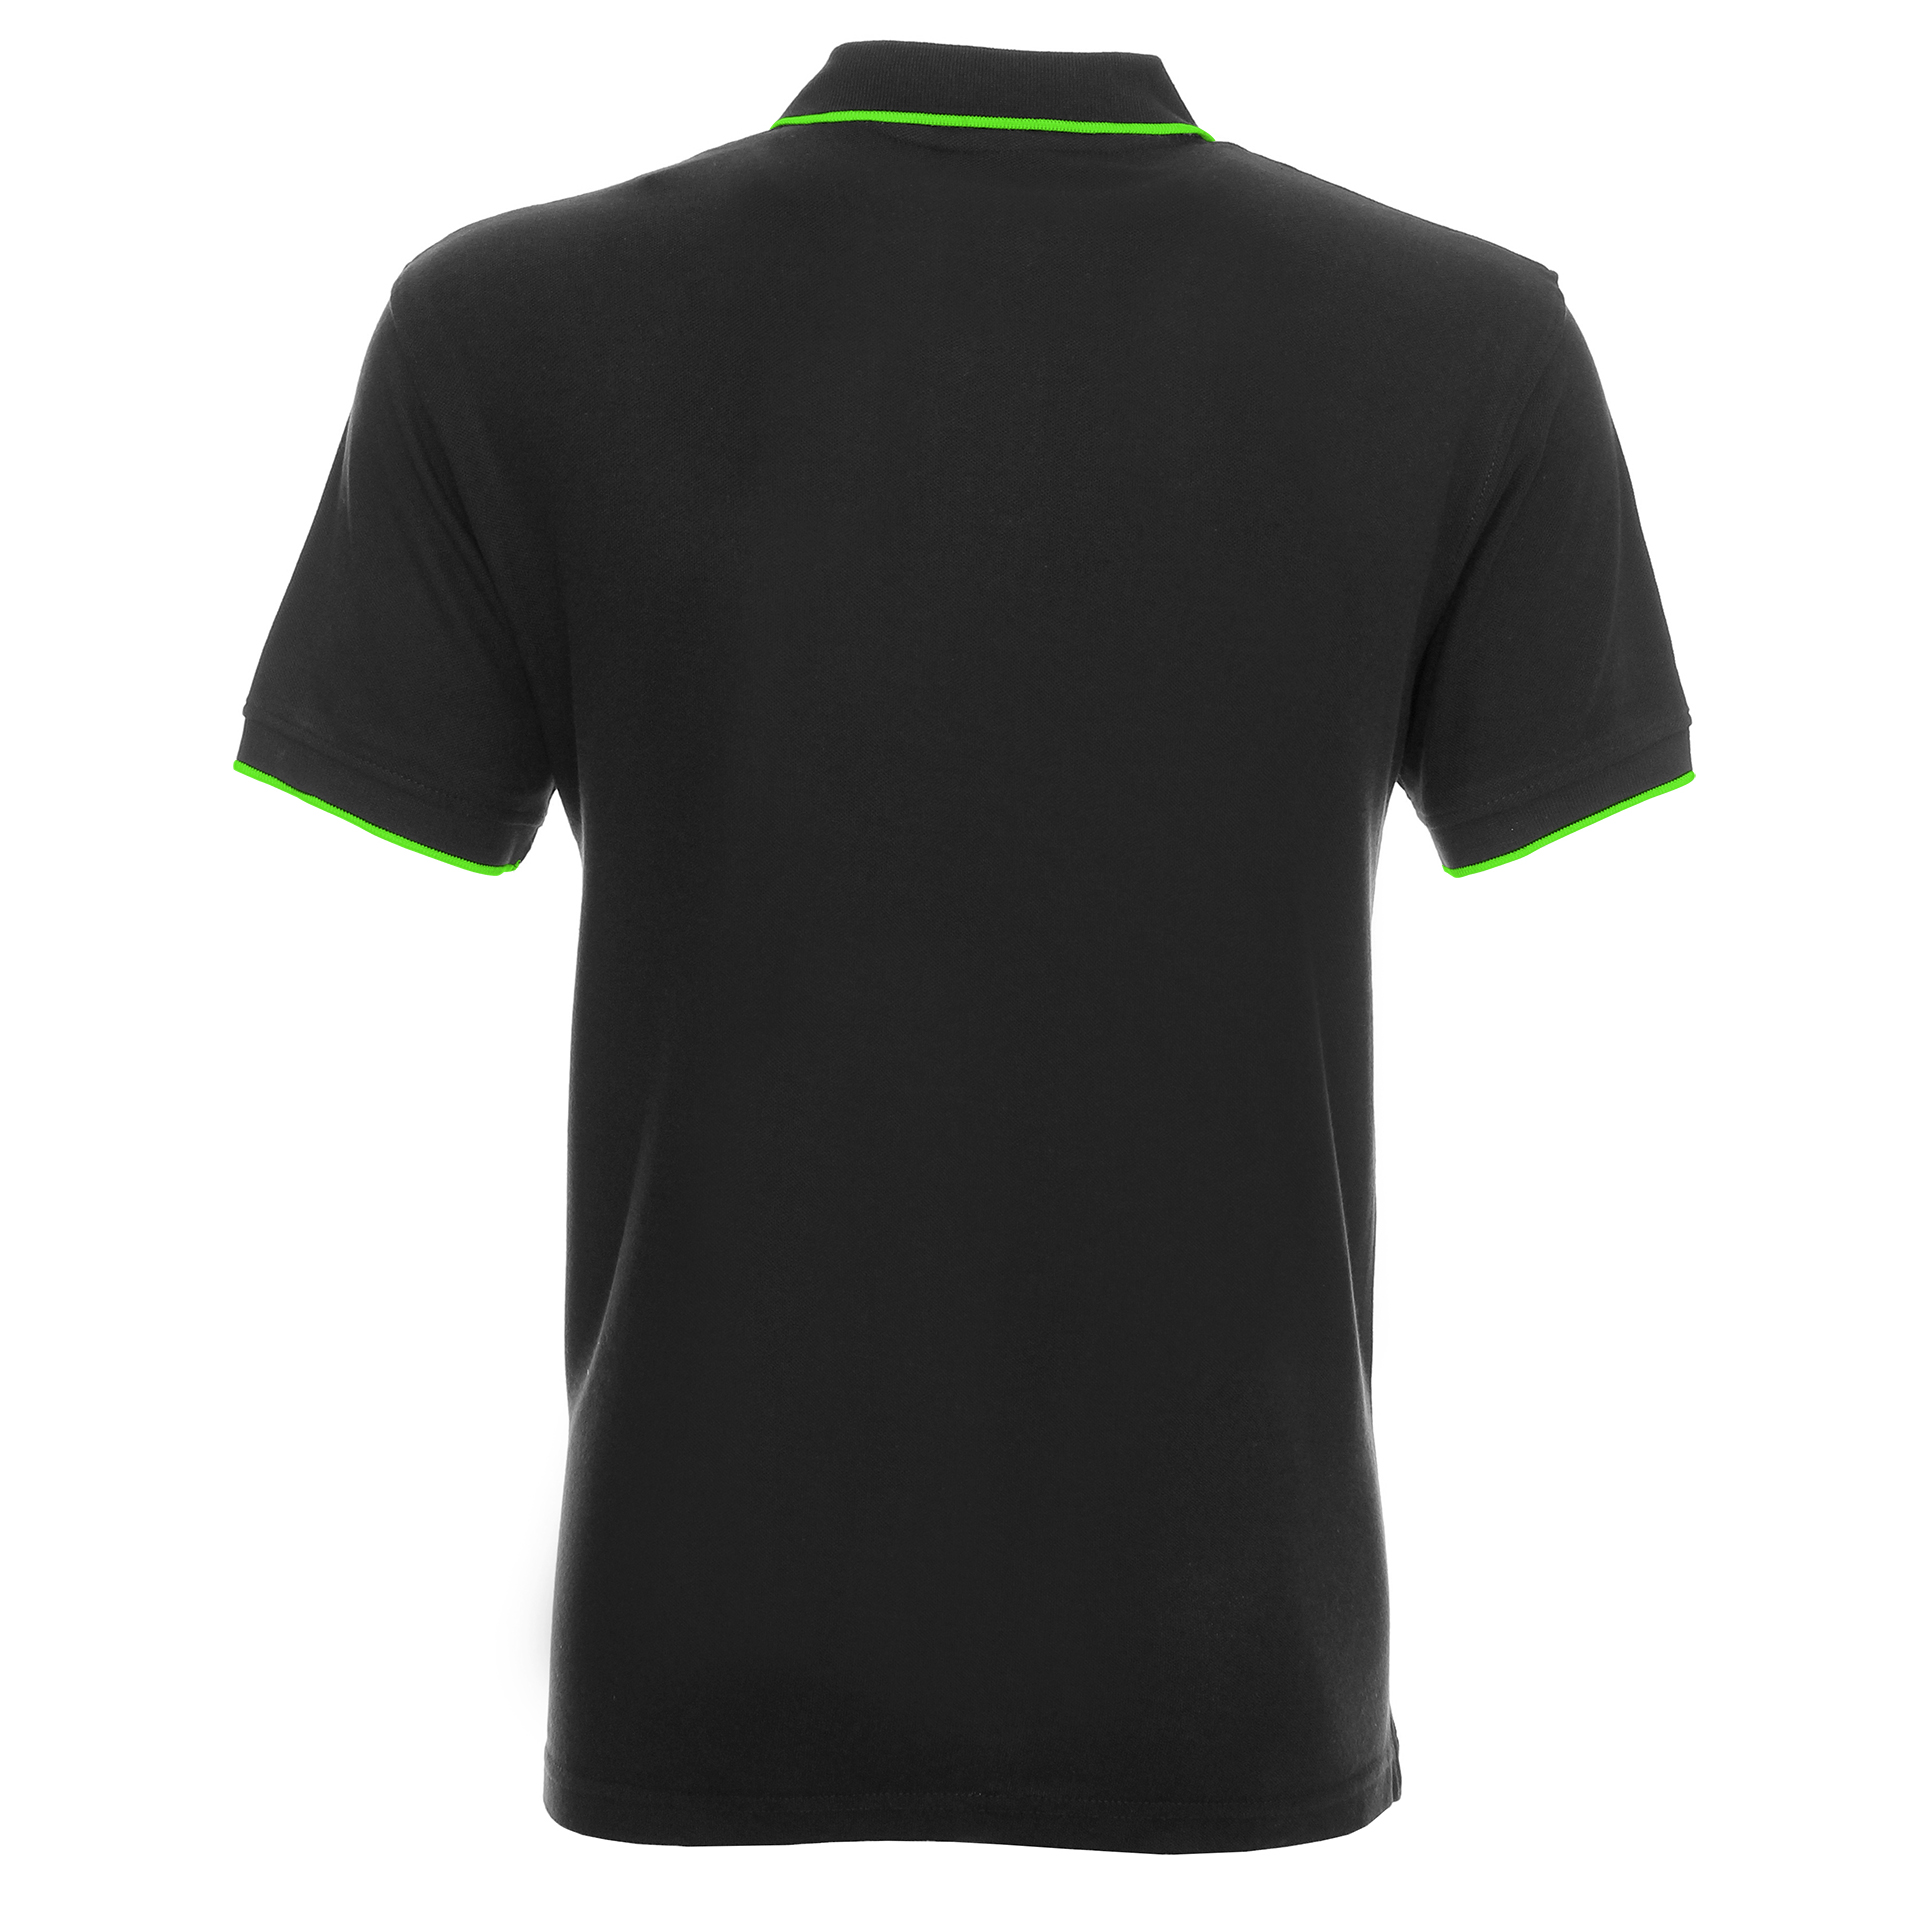 Koszulka Polo Promostars Line - szara z fluo zielonym wykończeniem